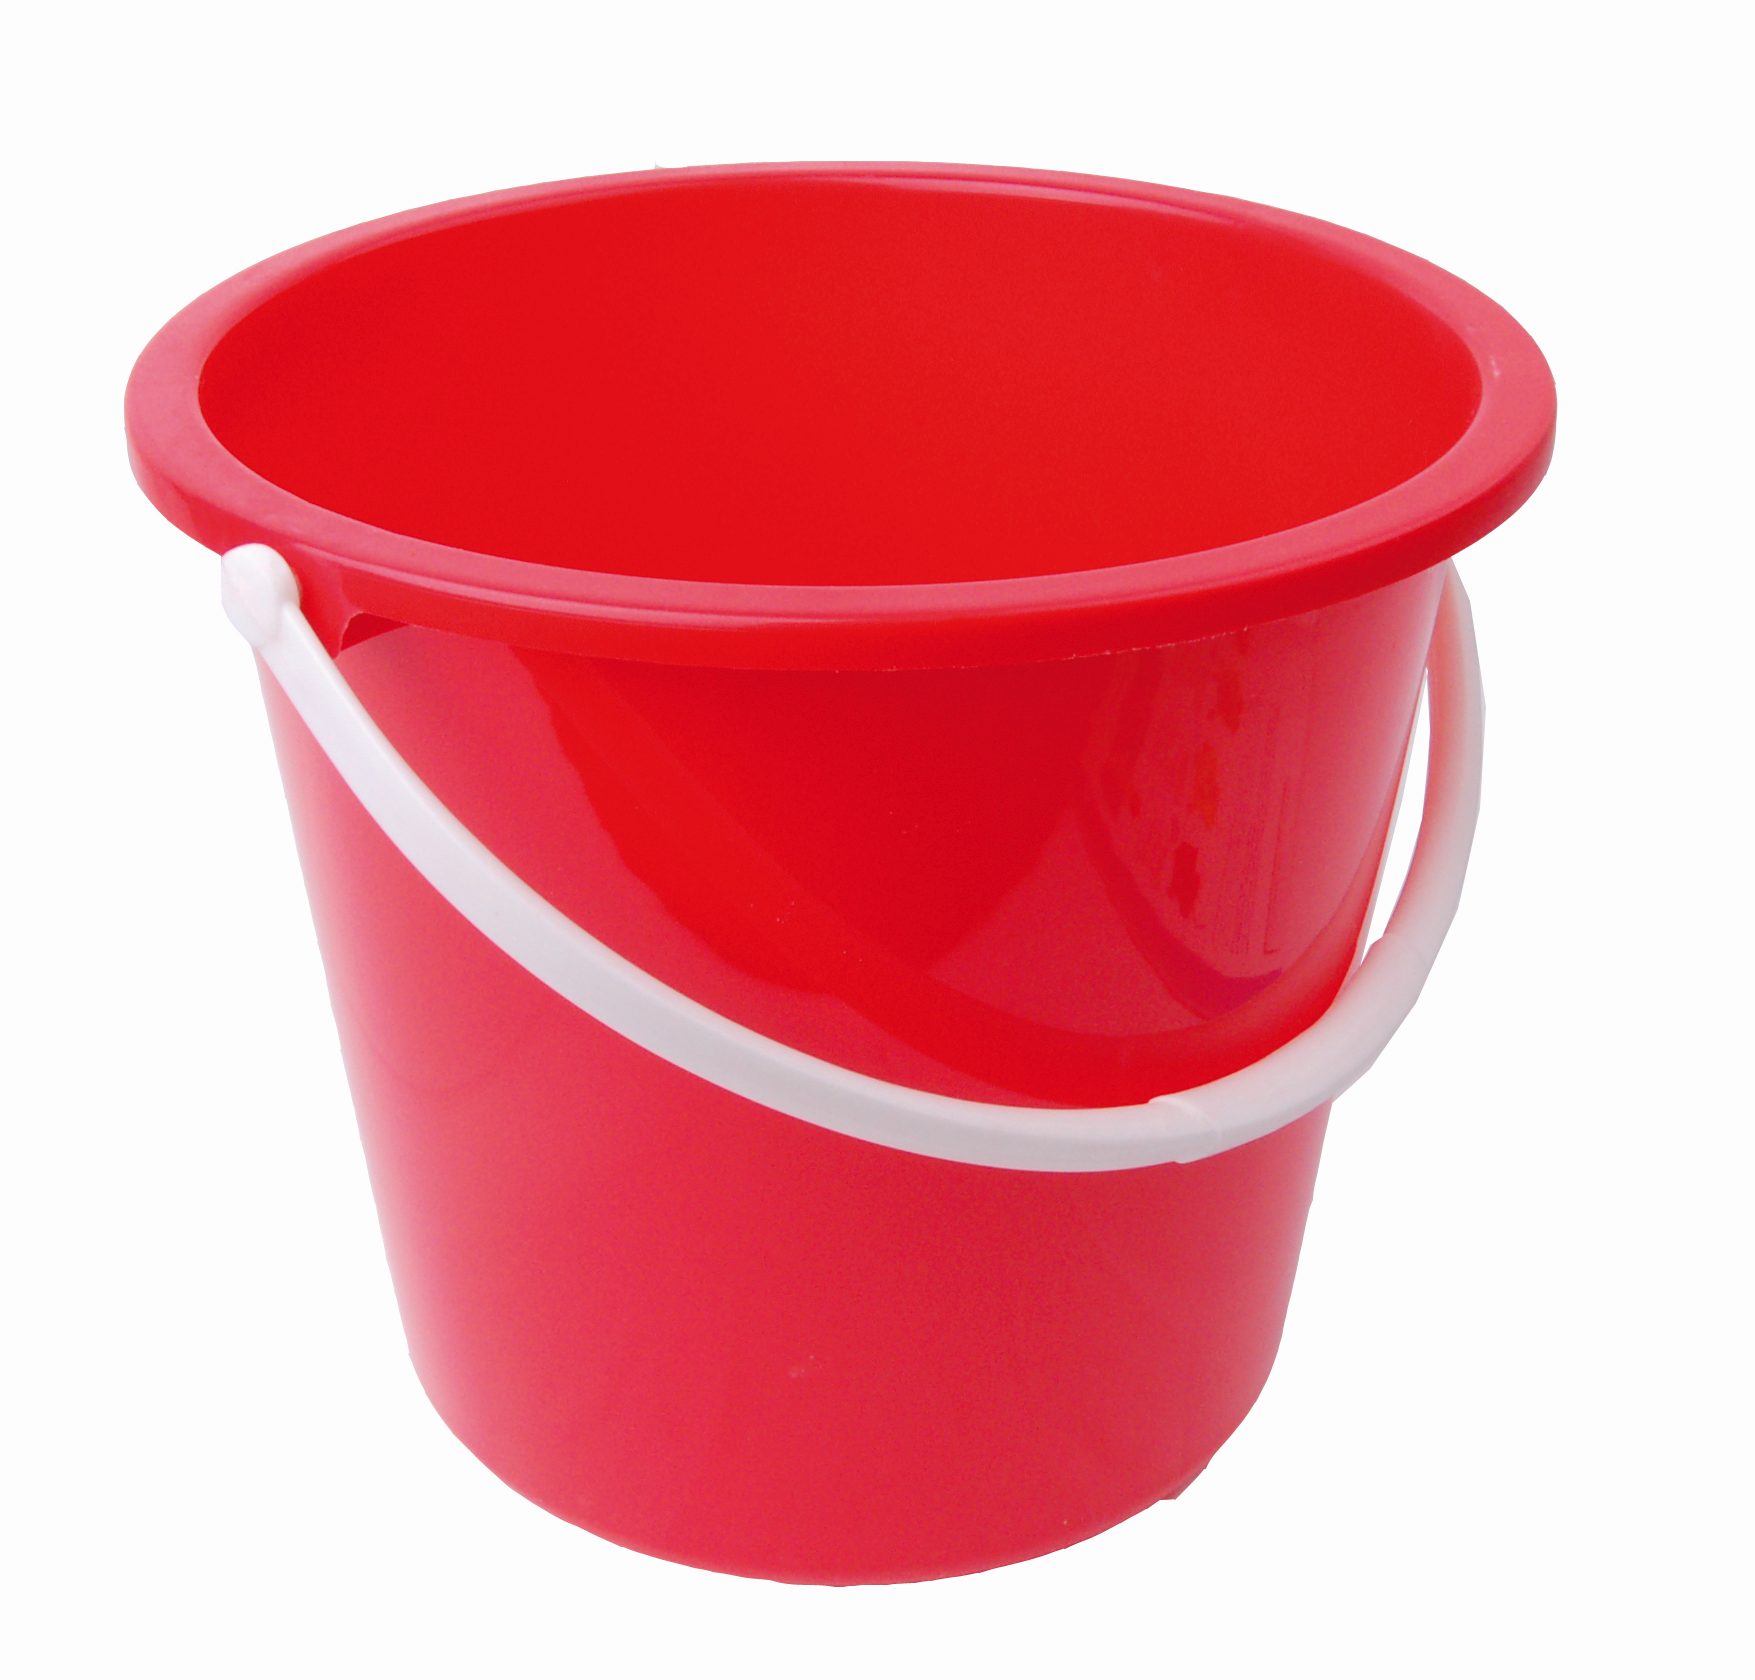 10 Litre Plastic Bucket Red | Medical Supermarket